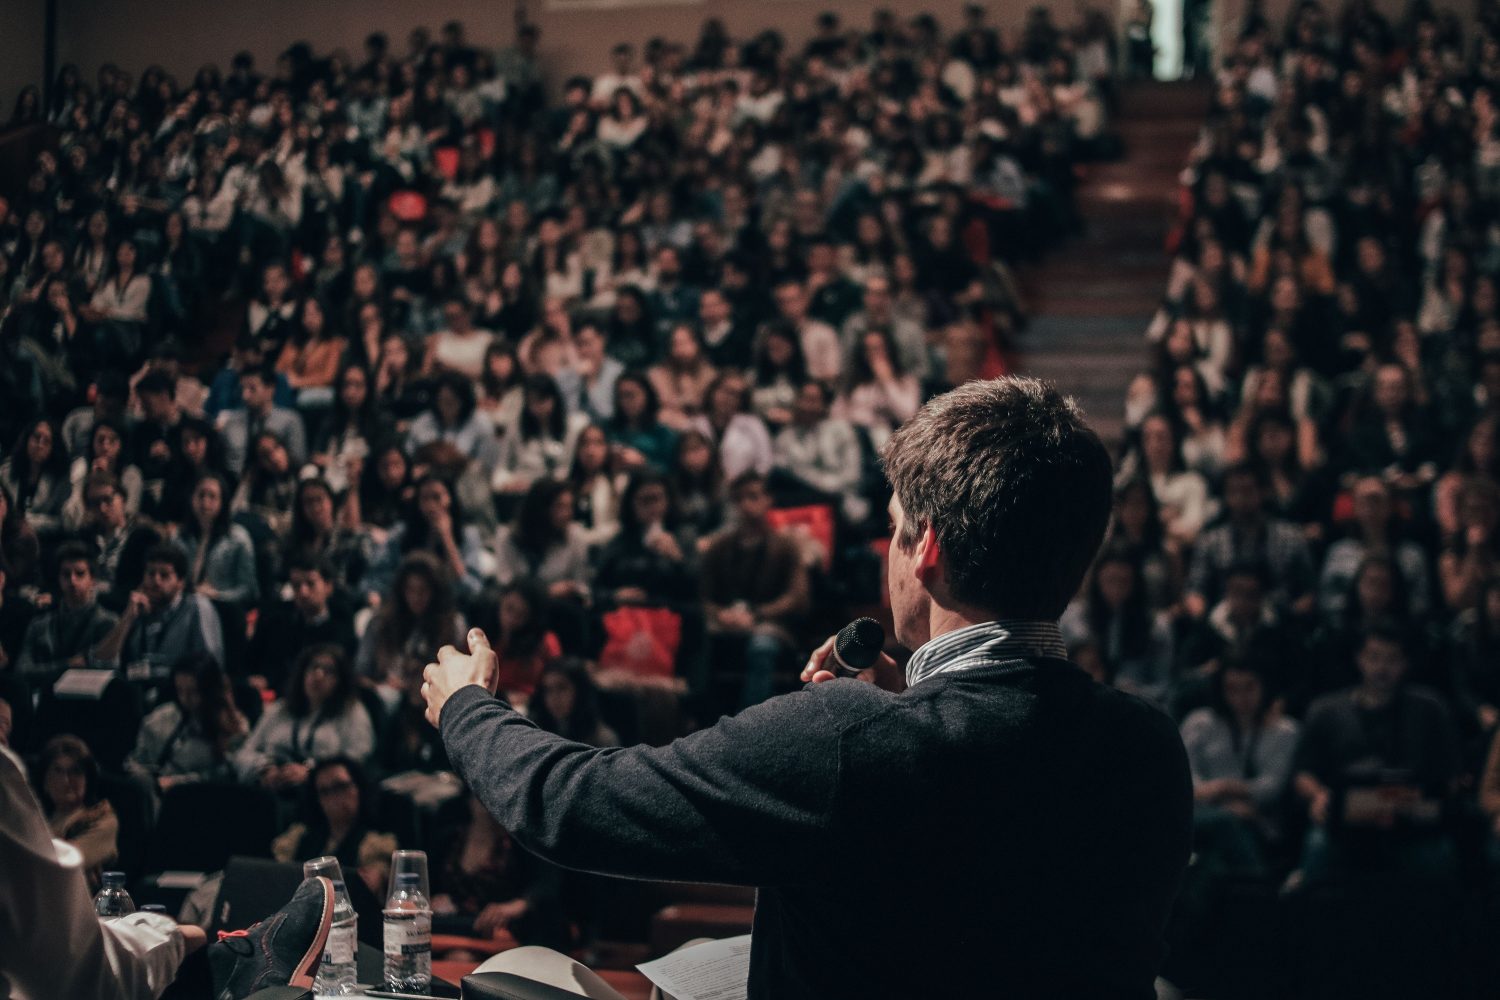 Un homme parle en public dans une salle devant beaucoup de gens